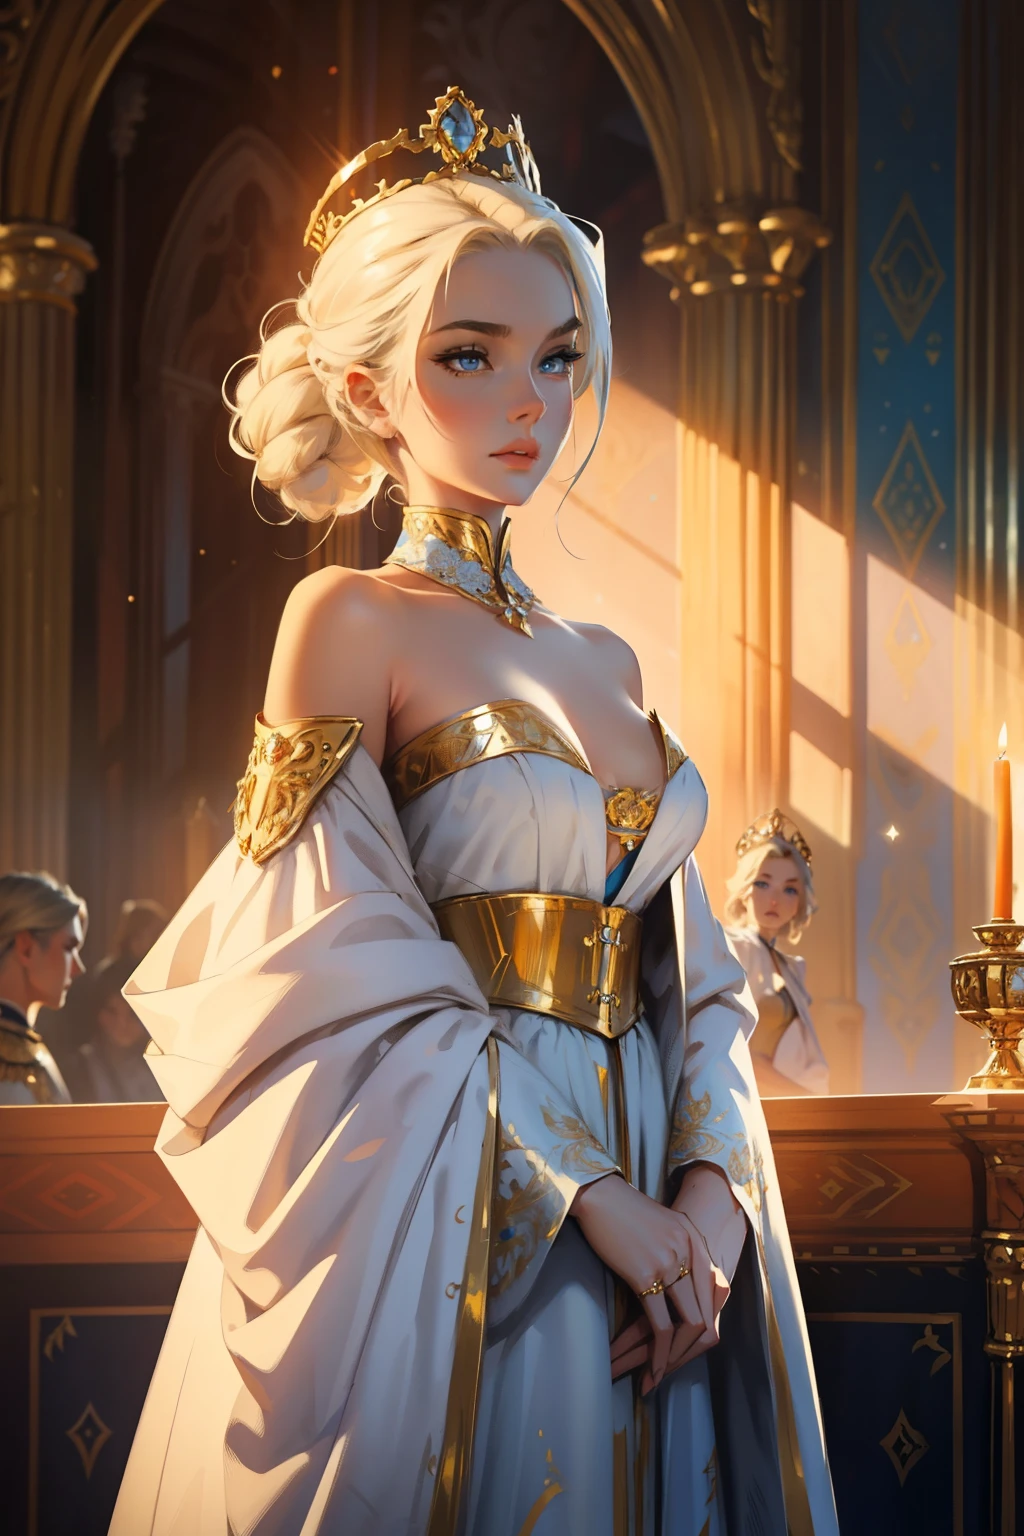 幻想, 19世紀, 皇后, 女士, 精緻的臉龐, 淺金色頭髮, 梳理头发, 藍眼睛, 穿著露肩白色皇家禮服, 布料上的金色圖案, 肩上有一條猩紅色的絲帶，上面有君主的標誌, 高畫質